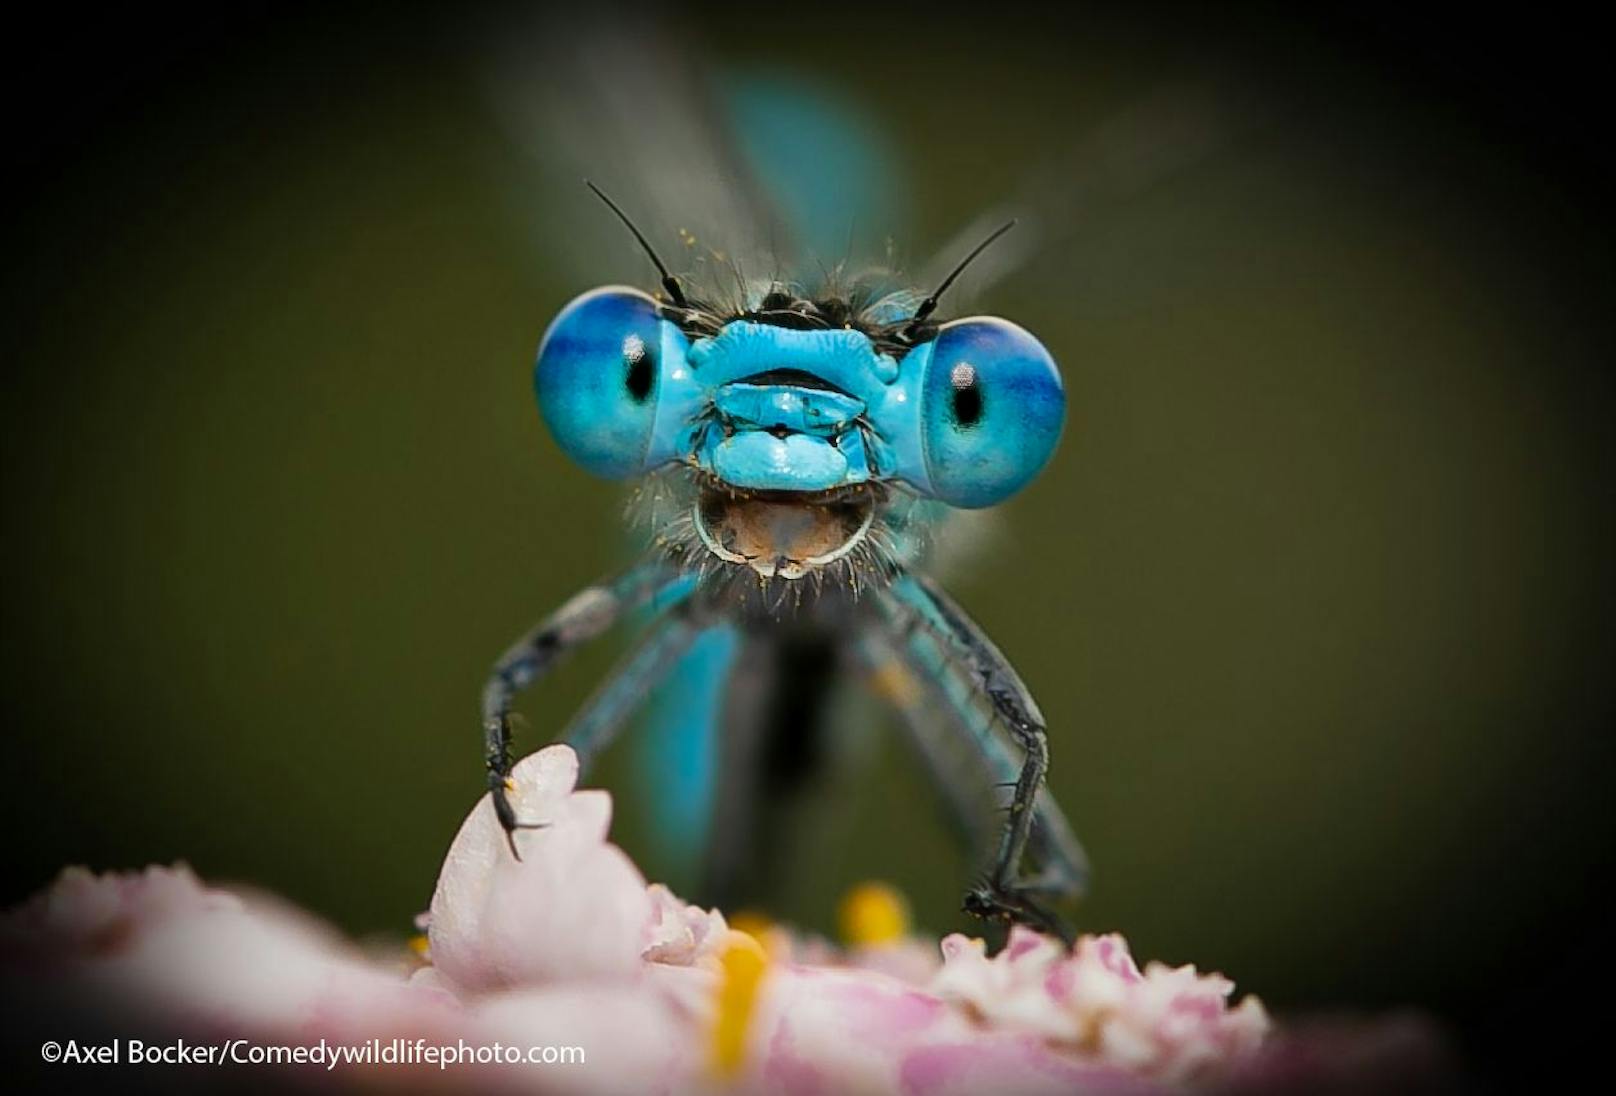 Wie lustig ist denn dieses Insekten-Gesicht? Als würde die Libelle tatsächlich in die Kamera lachen, oder?